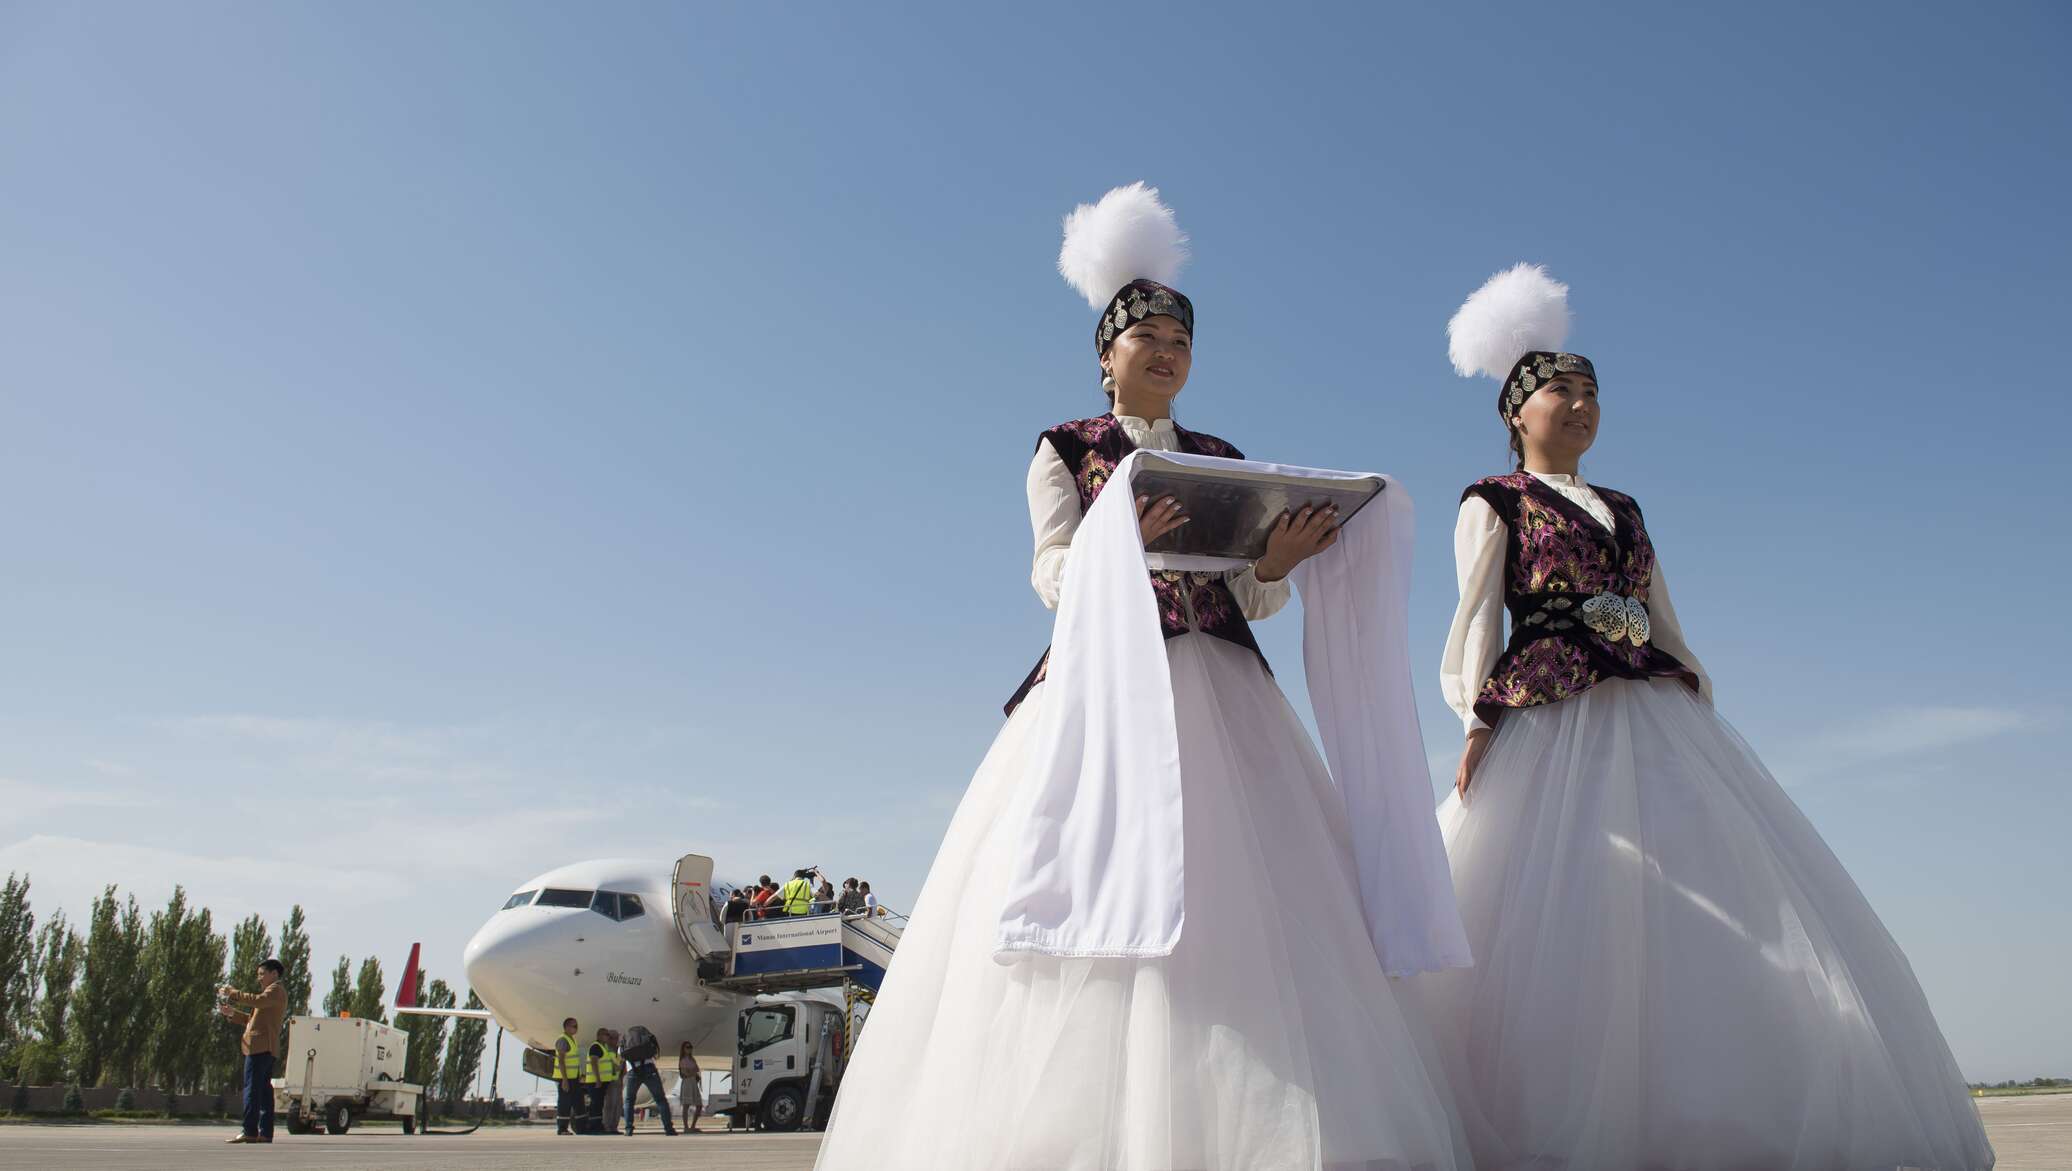 Оплата в киргизии. Кыргызский национальный костюм. Национальная одежда кыргызов. Киргизский национальный костюм женский. Казахский наряд для женщины.